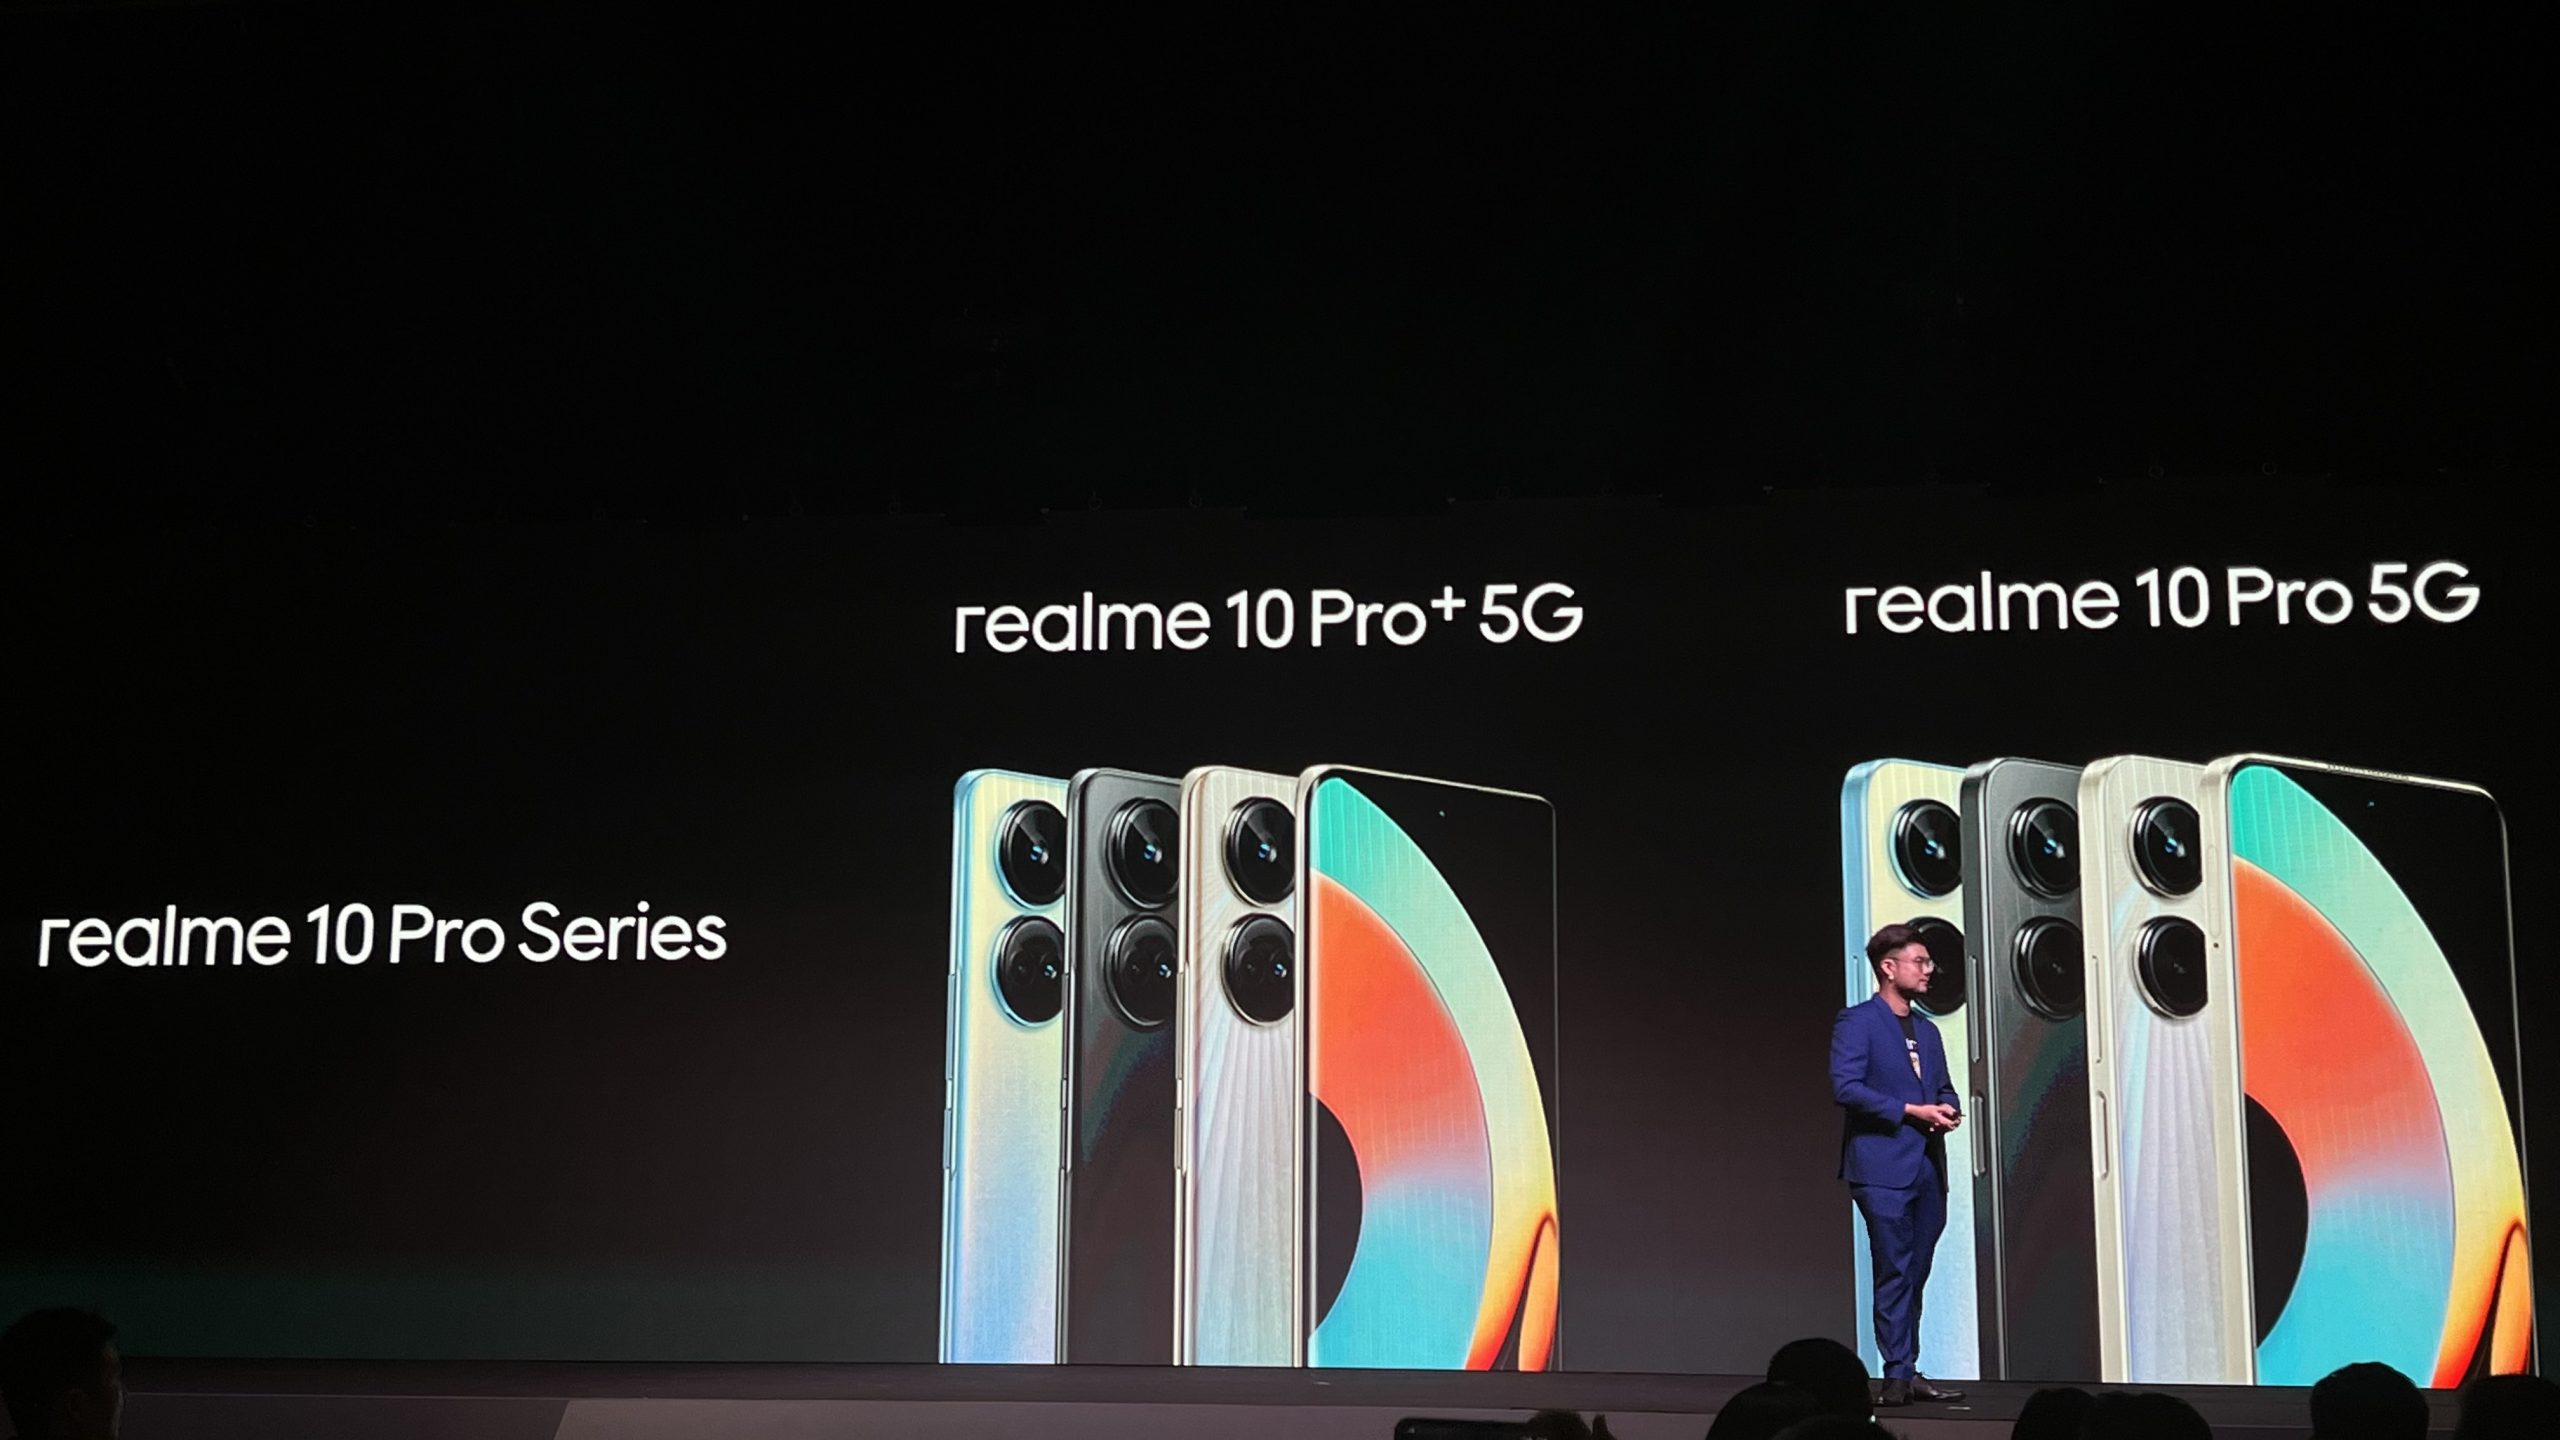 Realme 10 Pro 5G, Realme 10 Pro+ 5G With 108MP Camera, 67W Fast